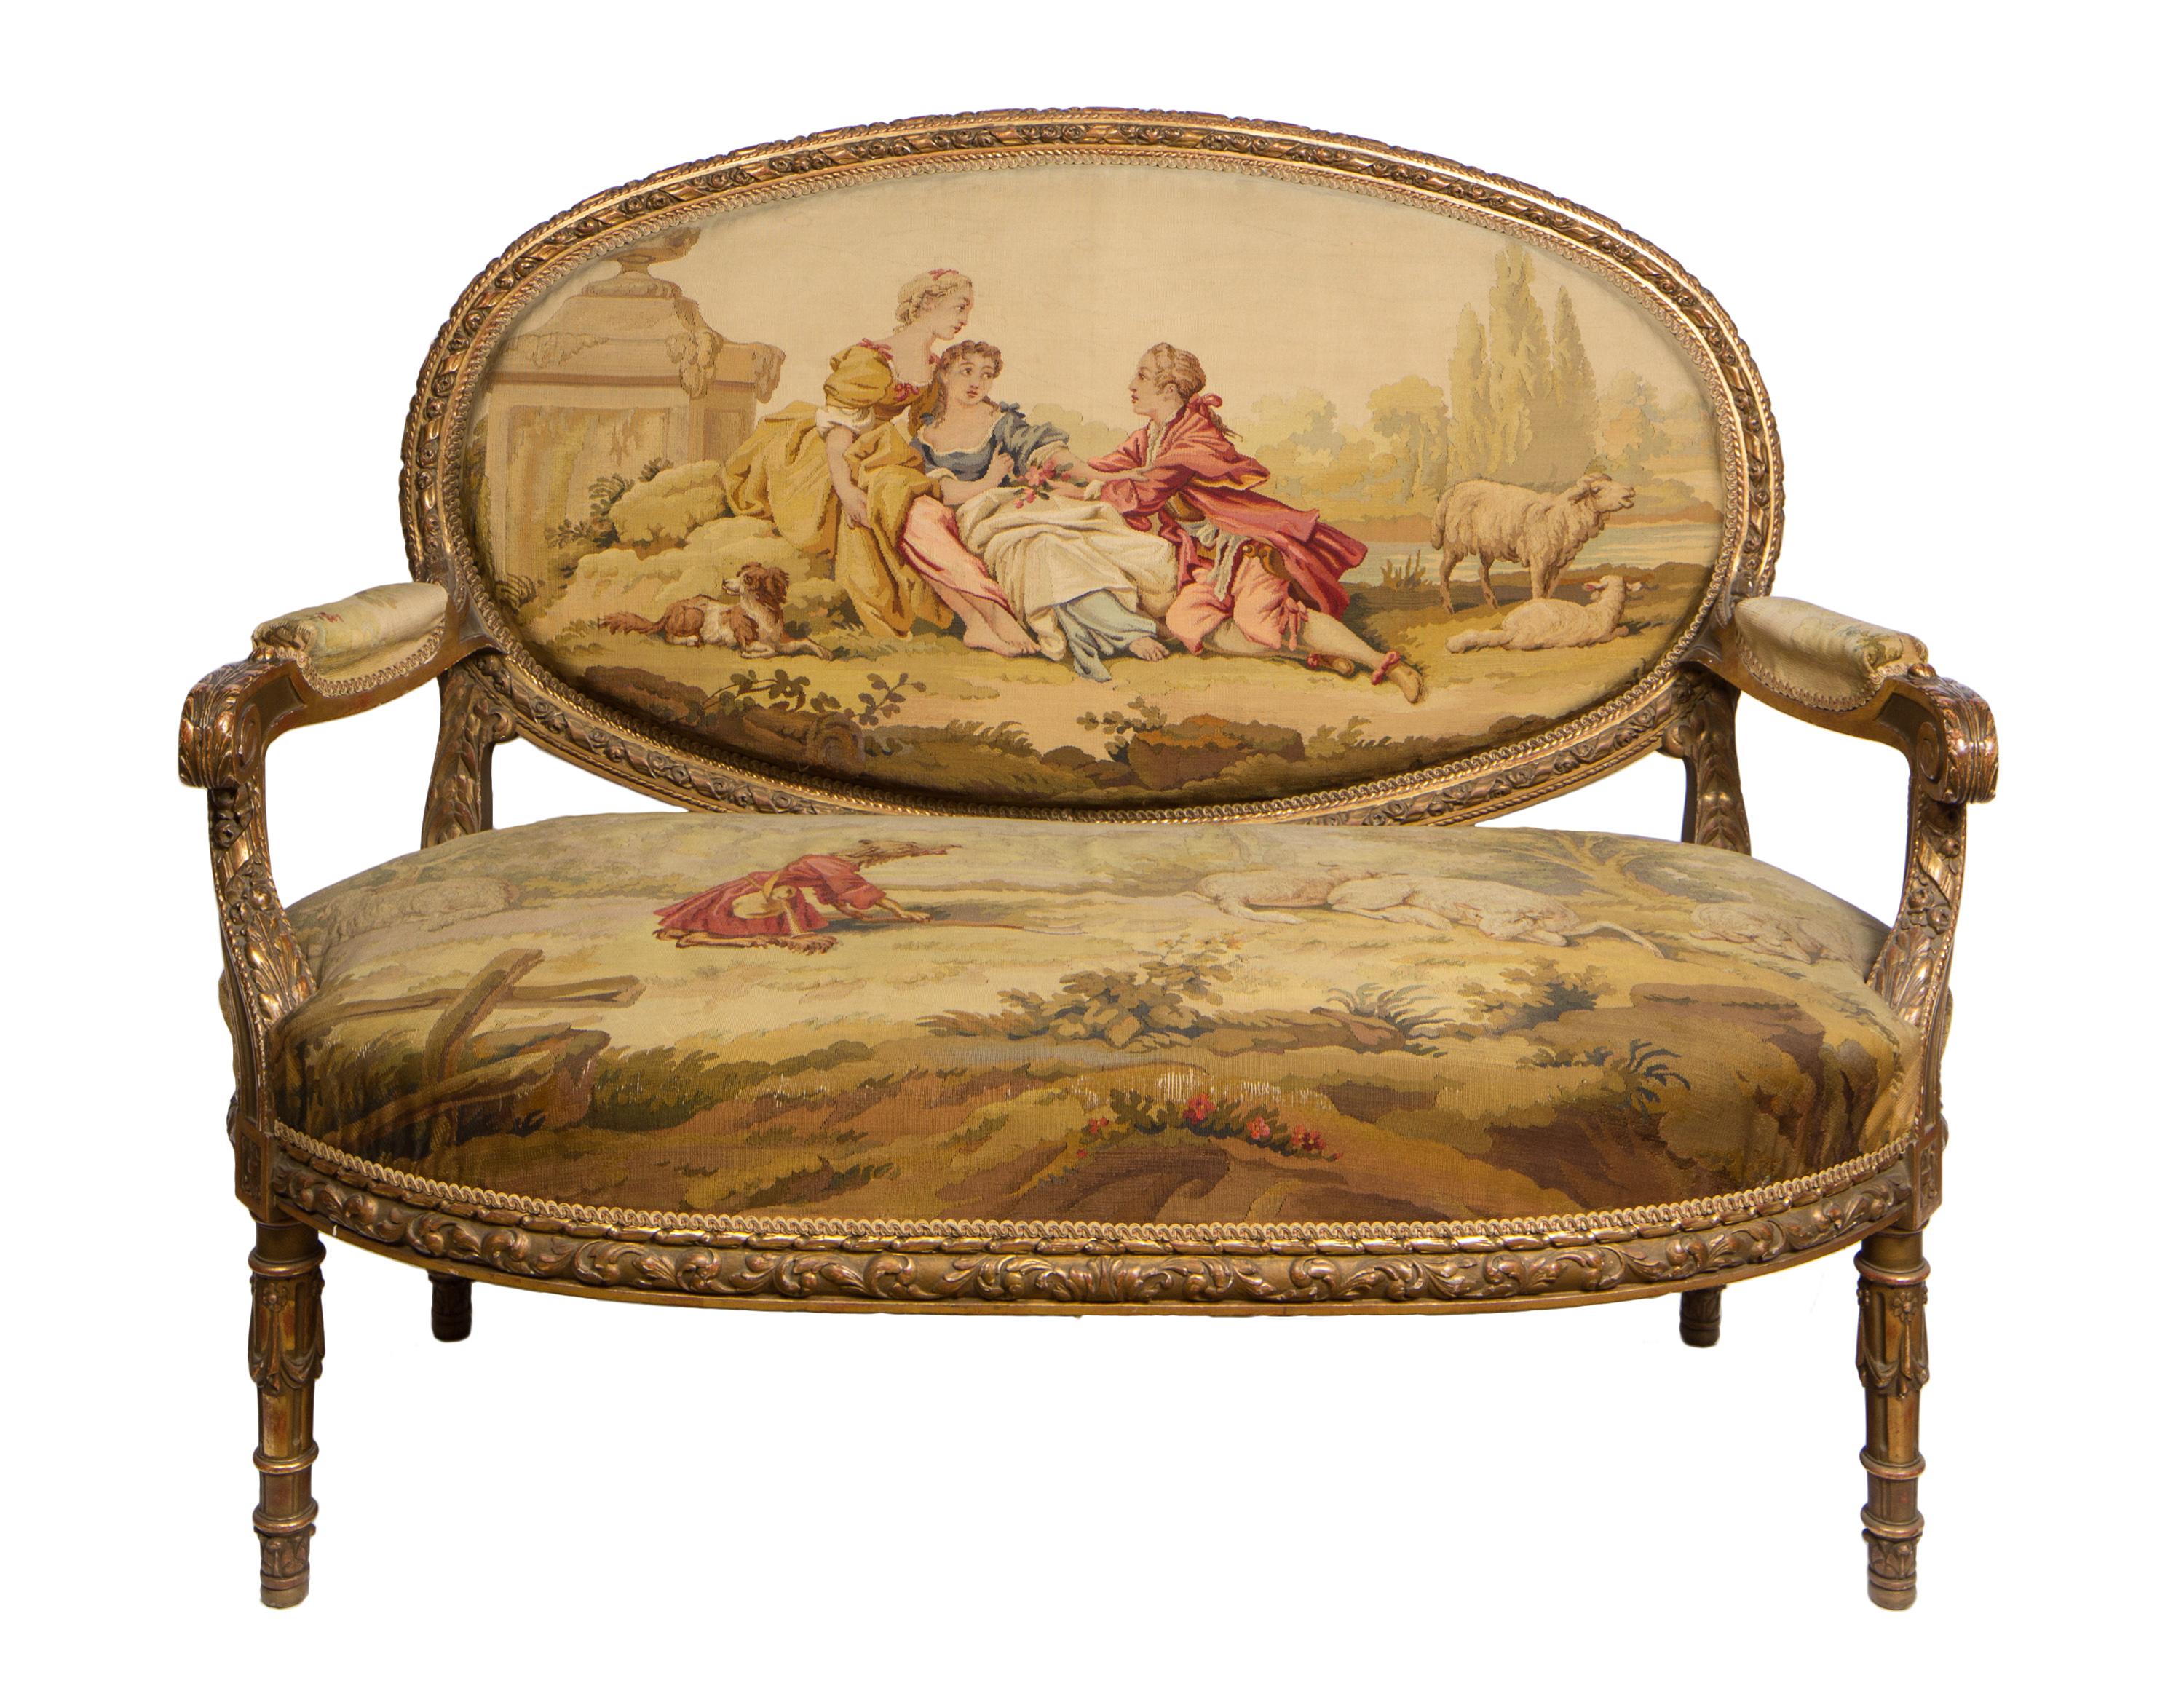 Diese dreiteilige Sitzgruppe im französischen Louis-XVI-Stil des 19. Jahrhunderts ist mit feinem Aubusson-Gobelinstoff gepolstert und besteht aus einem Sofa und zwei passenden Sesseln.
Die geschnitzten Goldholzmöbel rahmen fein gewebte